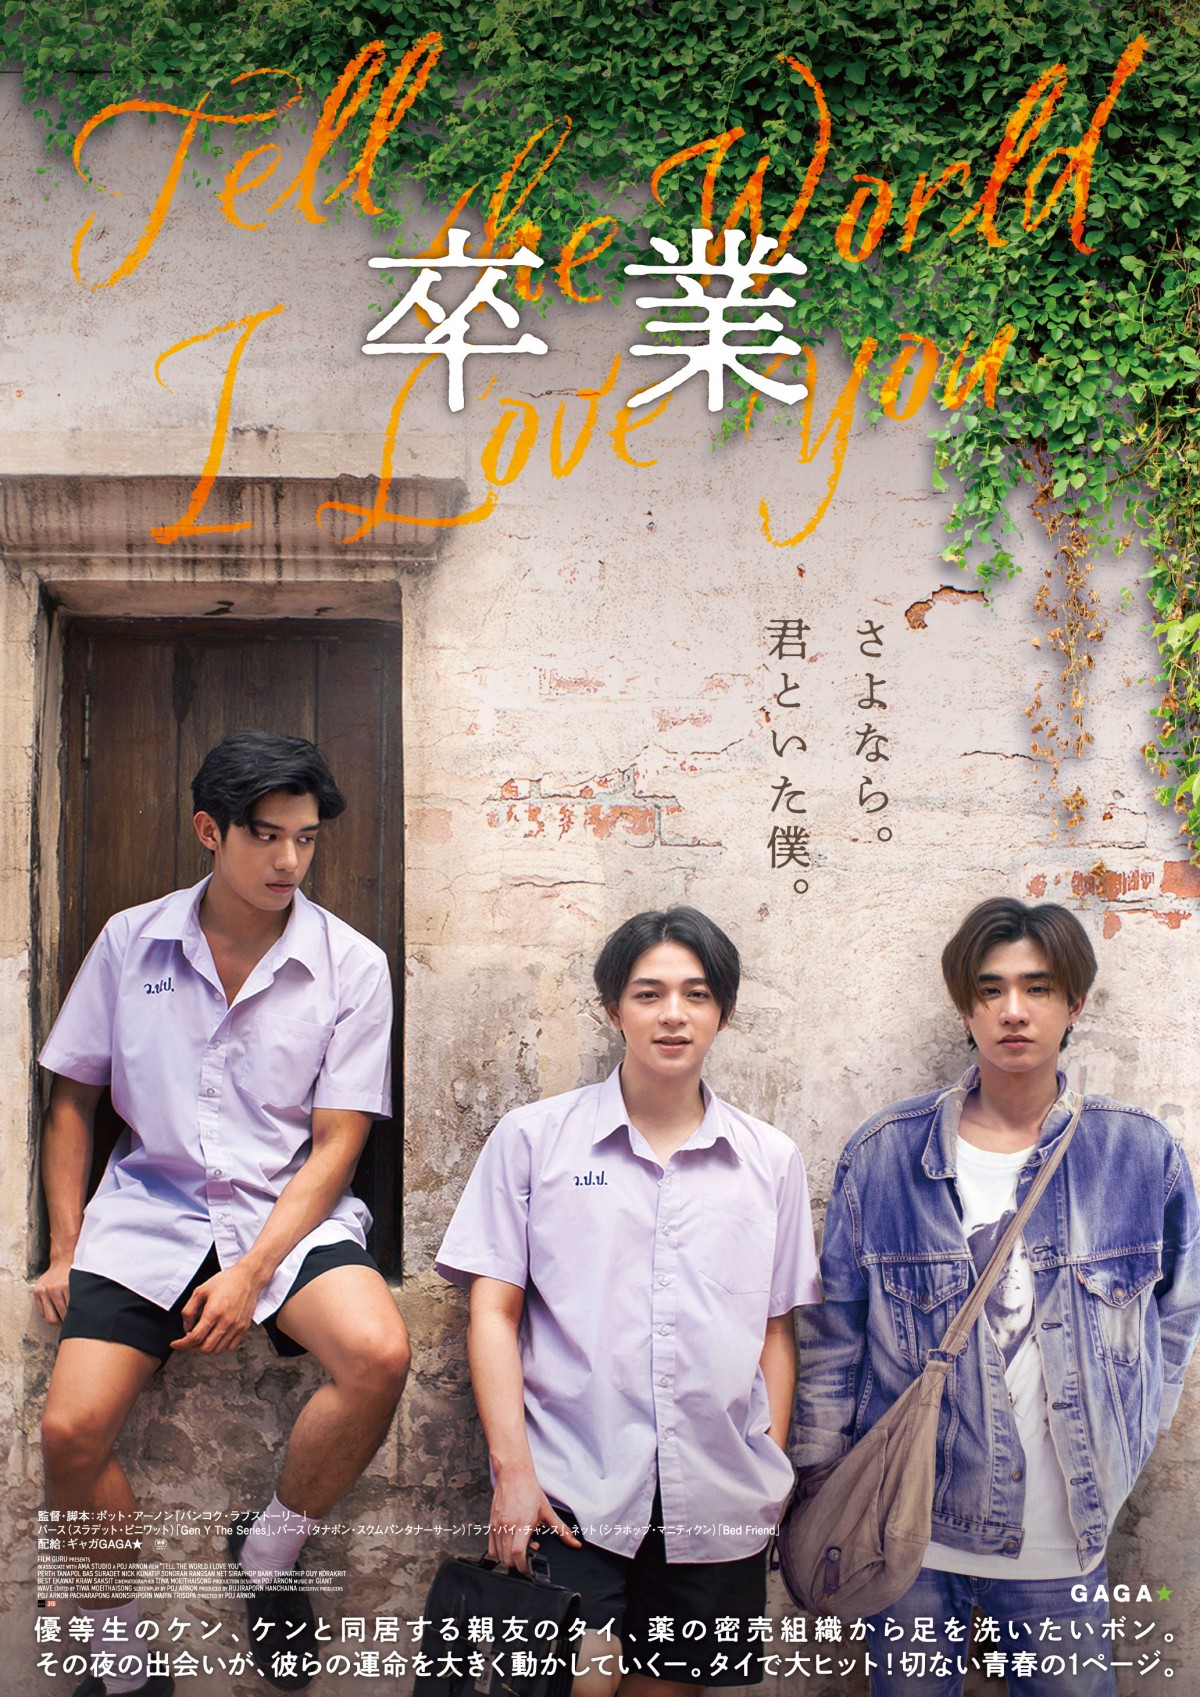 タイで大ヒットした青春映画『Tell the World I Love You』日本公開決定、字幕入り本予告解禁 | ORICON NEWS